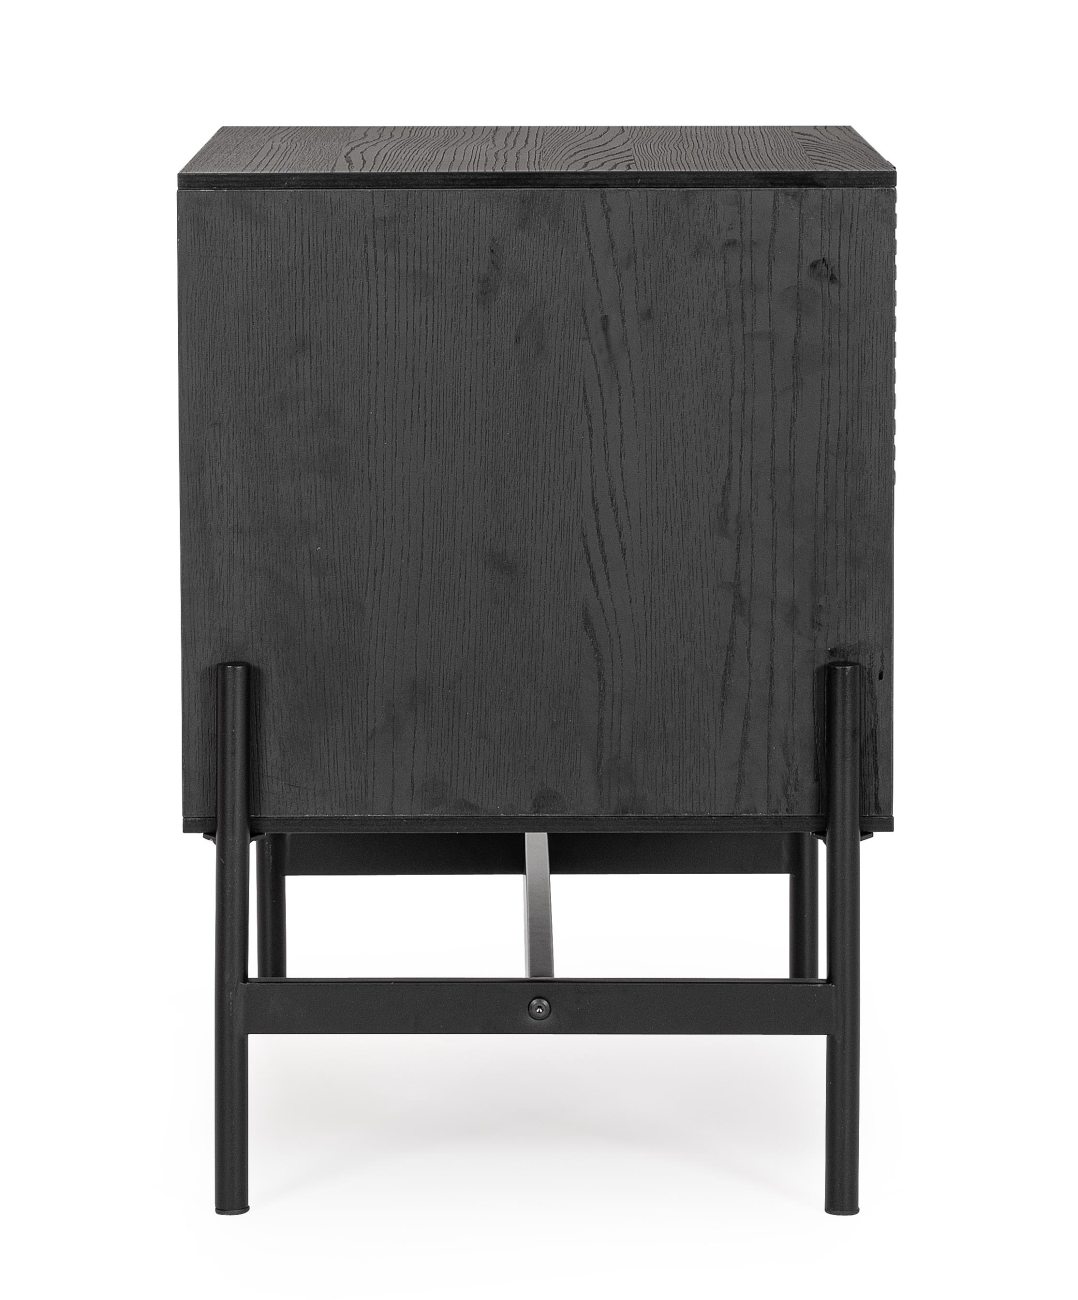 Der Nachttisch Allycia überzeugt mit seinem modernen Design. Gefertigt wurde er aus Eschenholz, welches einen natürlichen Farbton besitzt. Das Gestell ist aus Metall und hat eine schwarze Farbe. Der Nachttisch besitzt eine Breite von 50 cm.